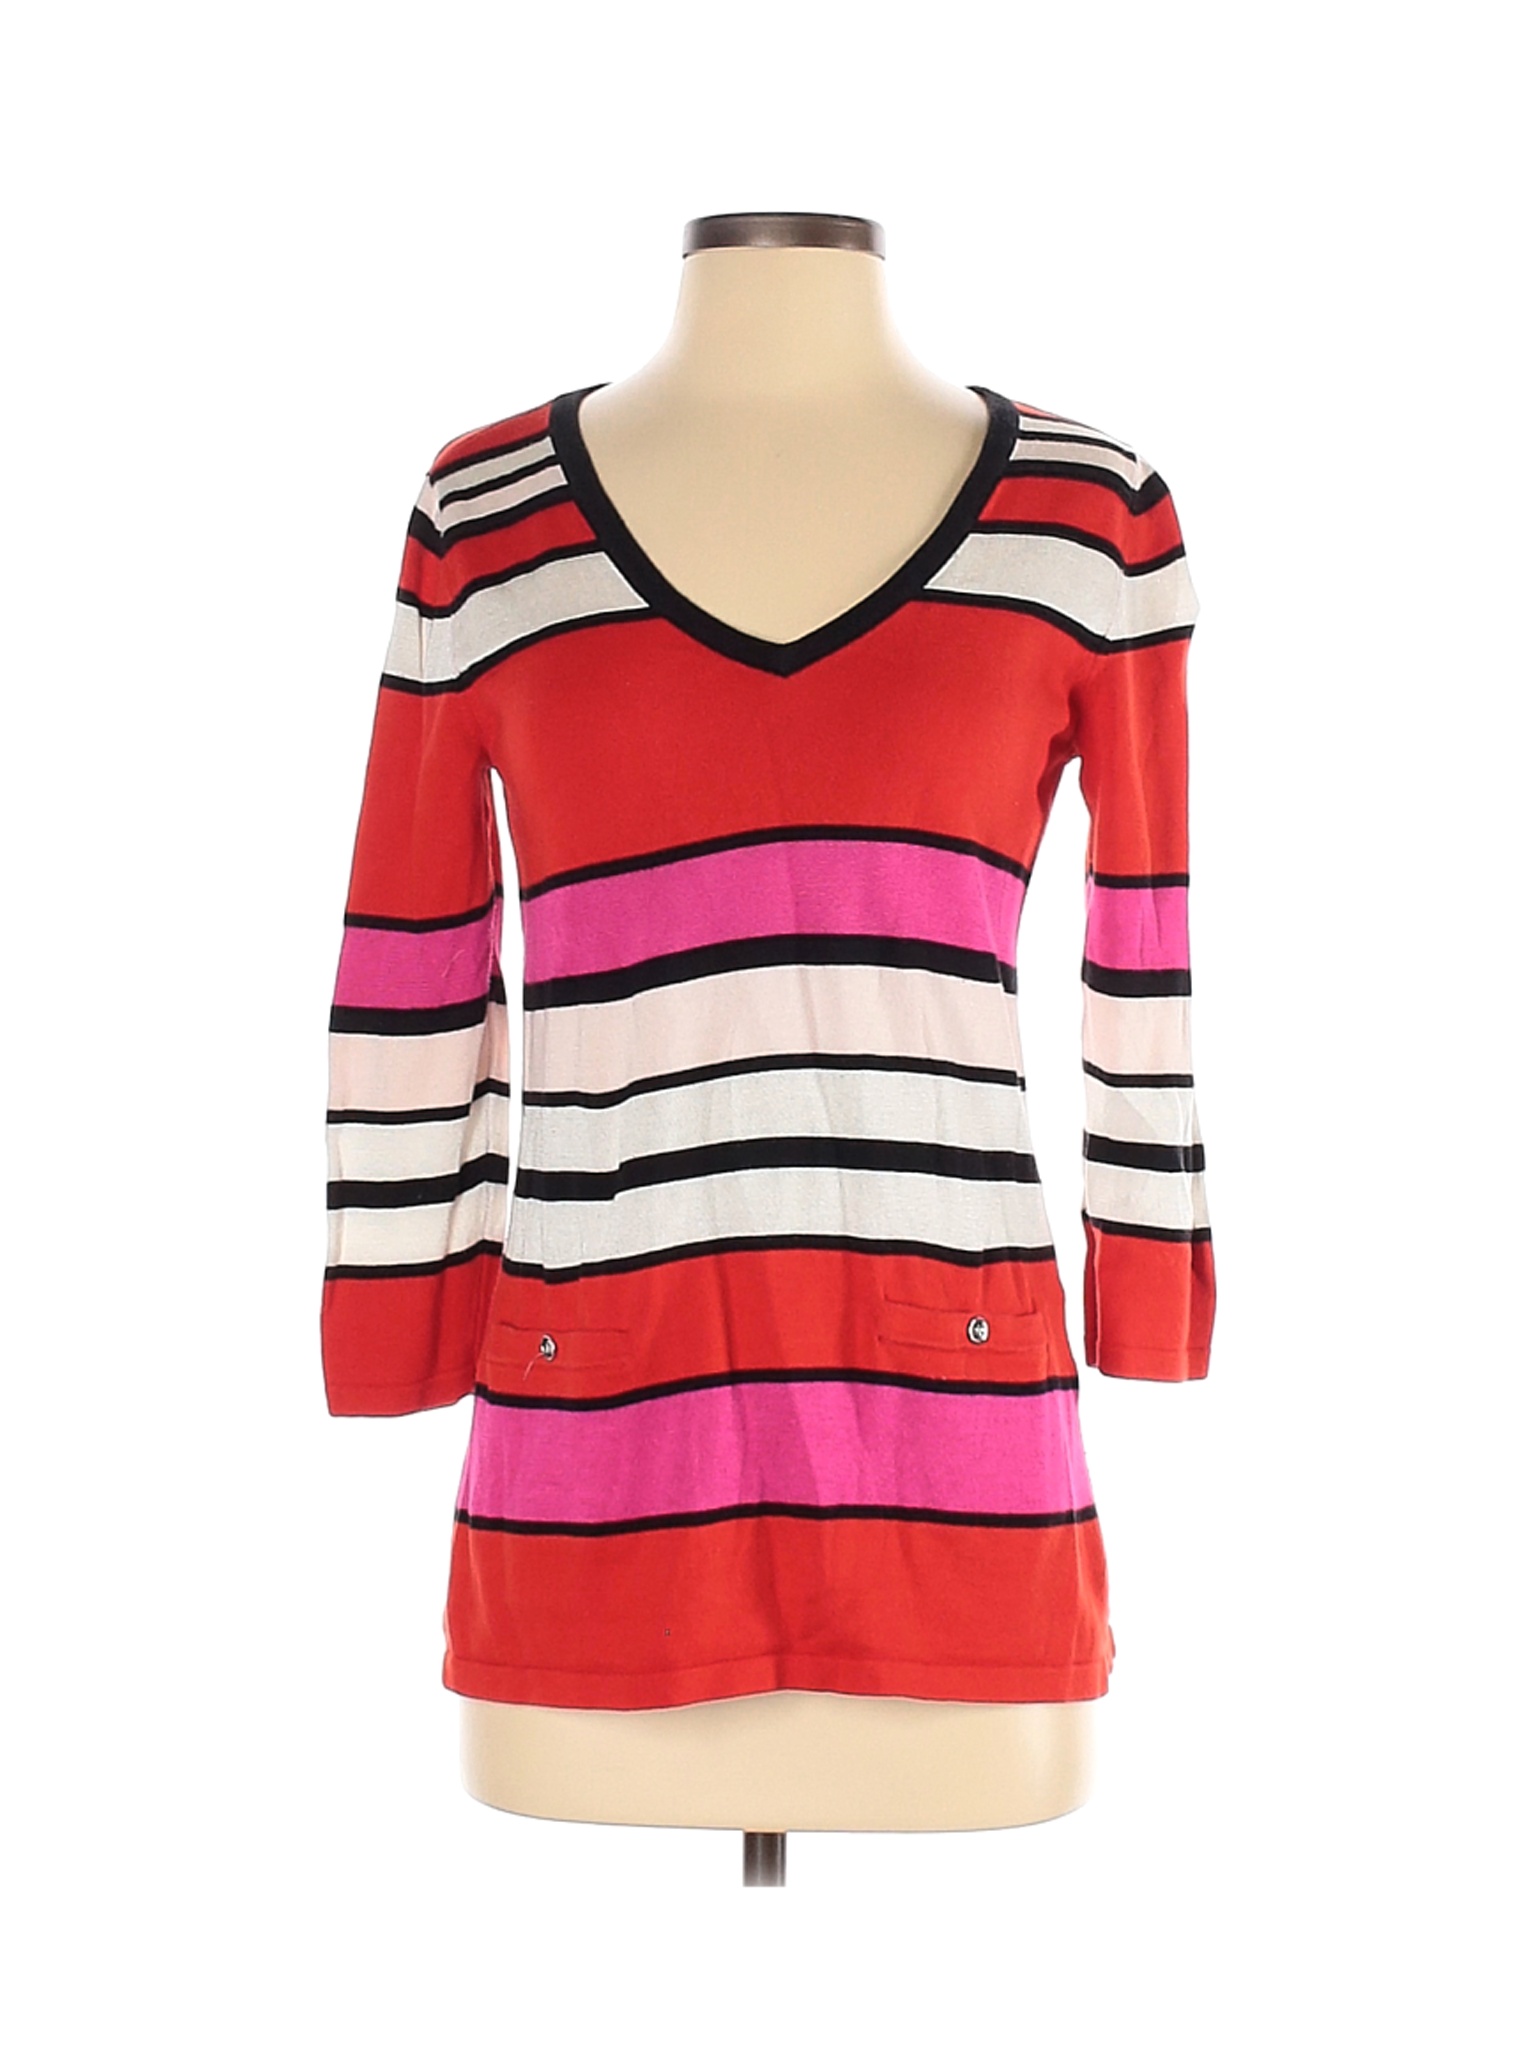 Jones New York Signature Women Red Pullover Sweater XS | eBay